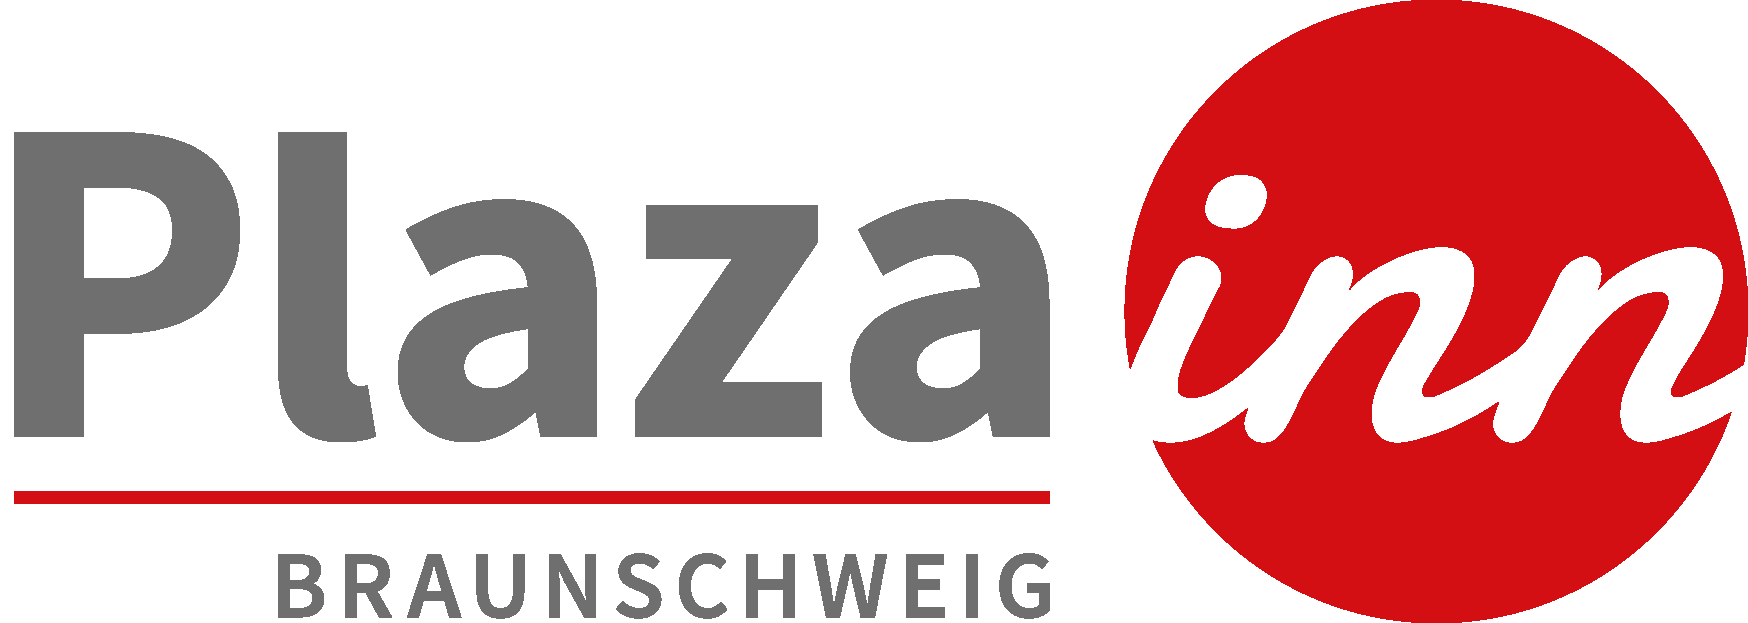  Plaza Inn Braunschweig City Nord, Logo